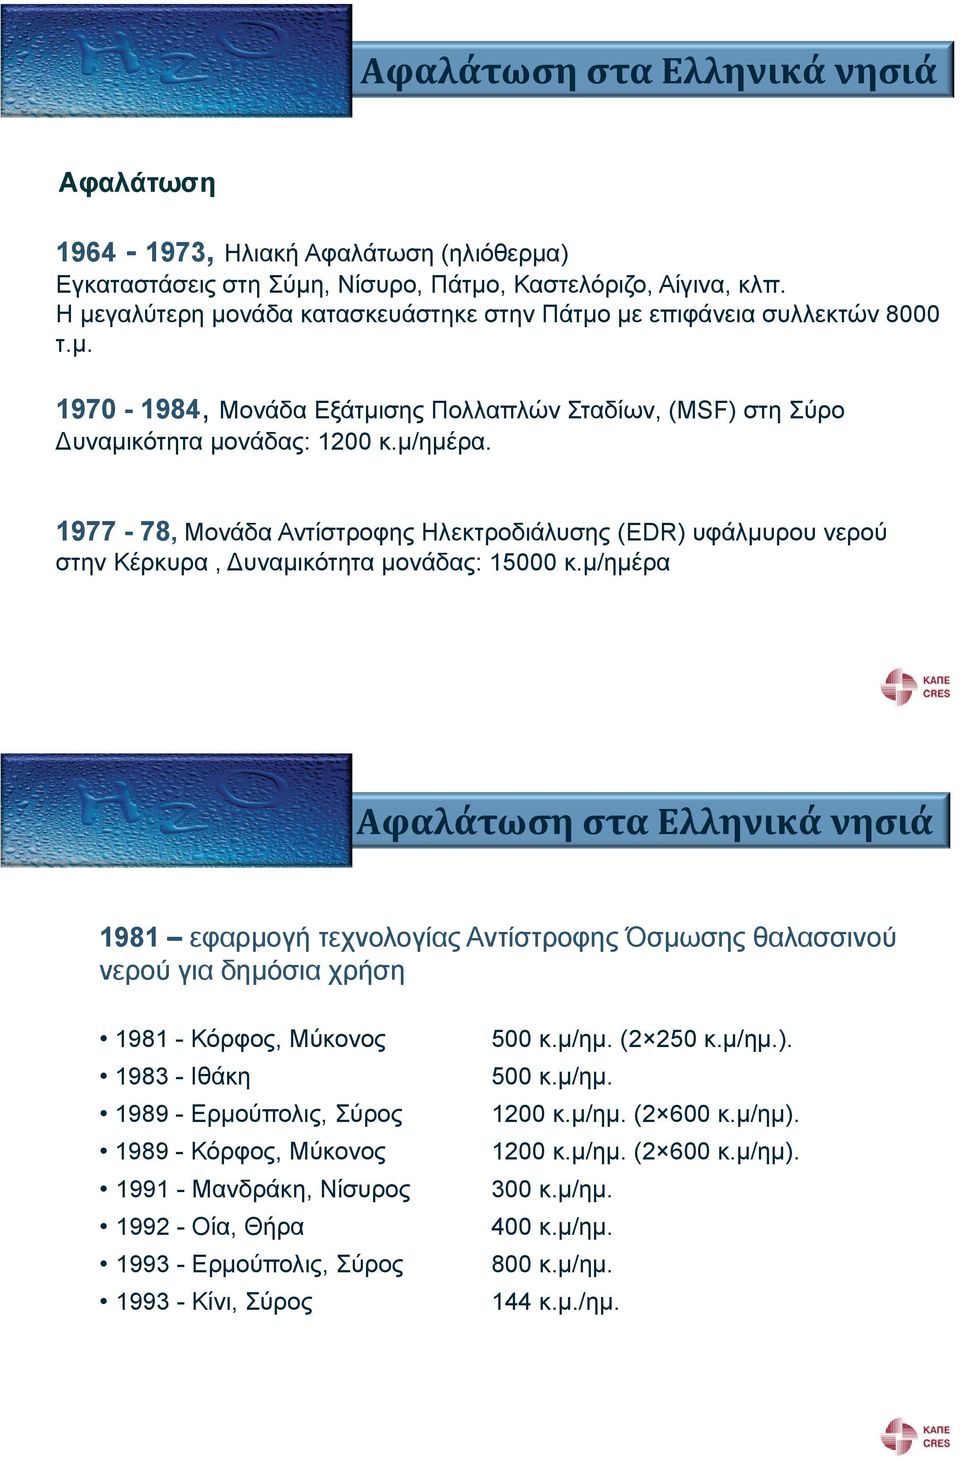 1977-78, Μονάδα Αντίστροφη Ηλεκτροδιάλυση (EDR) υφάλμυρου νερού στην Κέρκυρα, Δυναμικότητα μονάδα : 15000 κ.